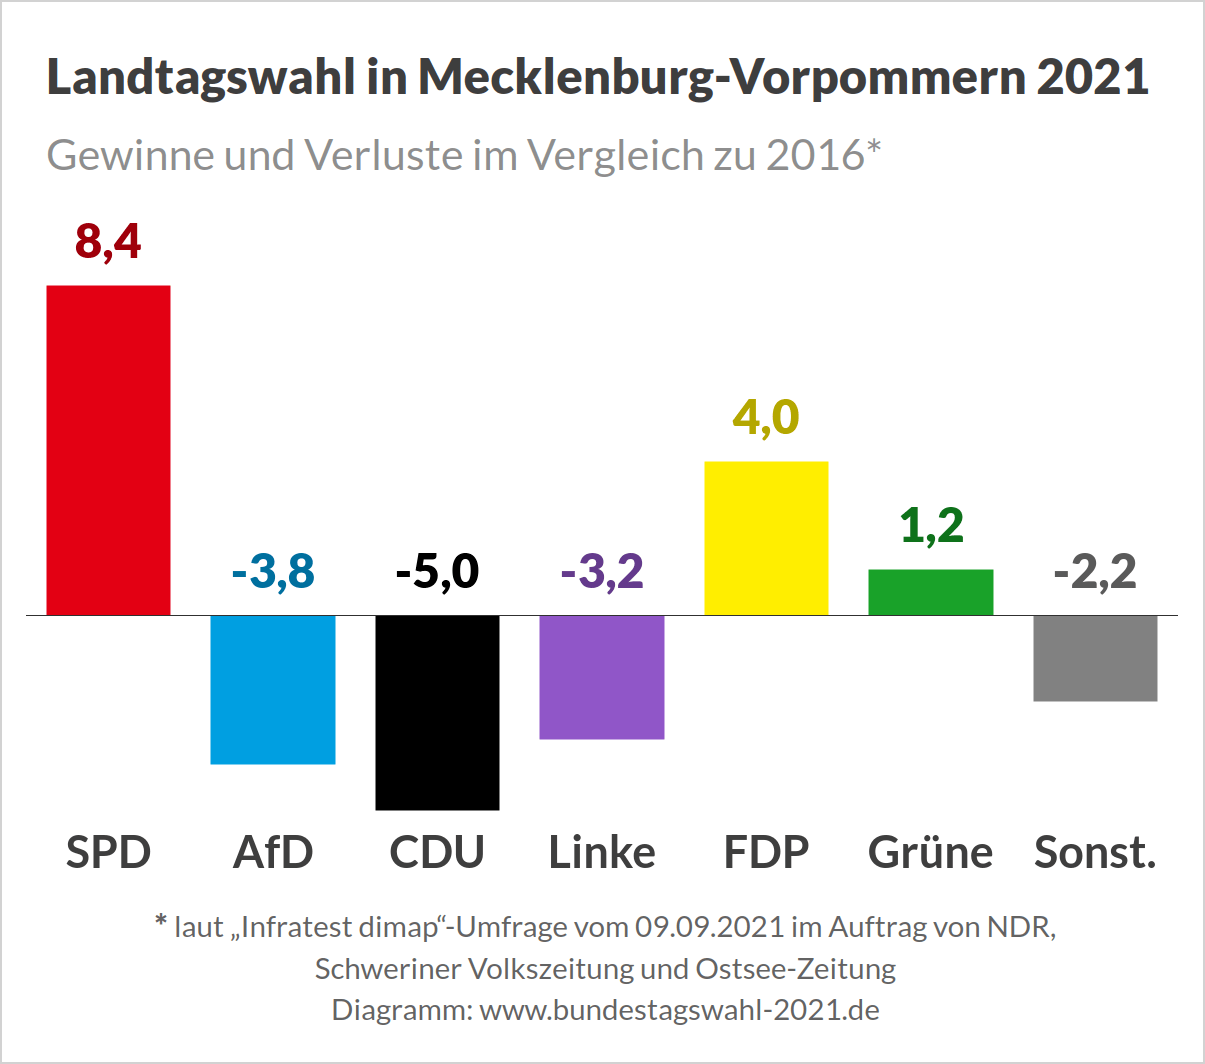 Landtagswahl in Mecklenburg-Vorpommern 2021 - Umfrage